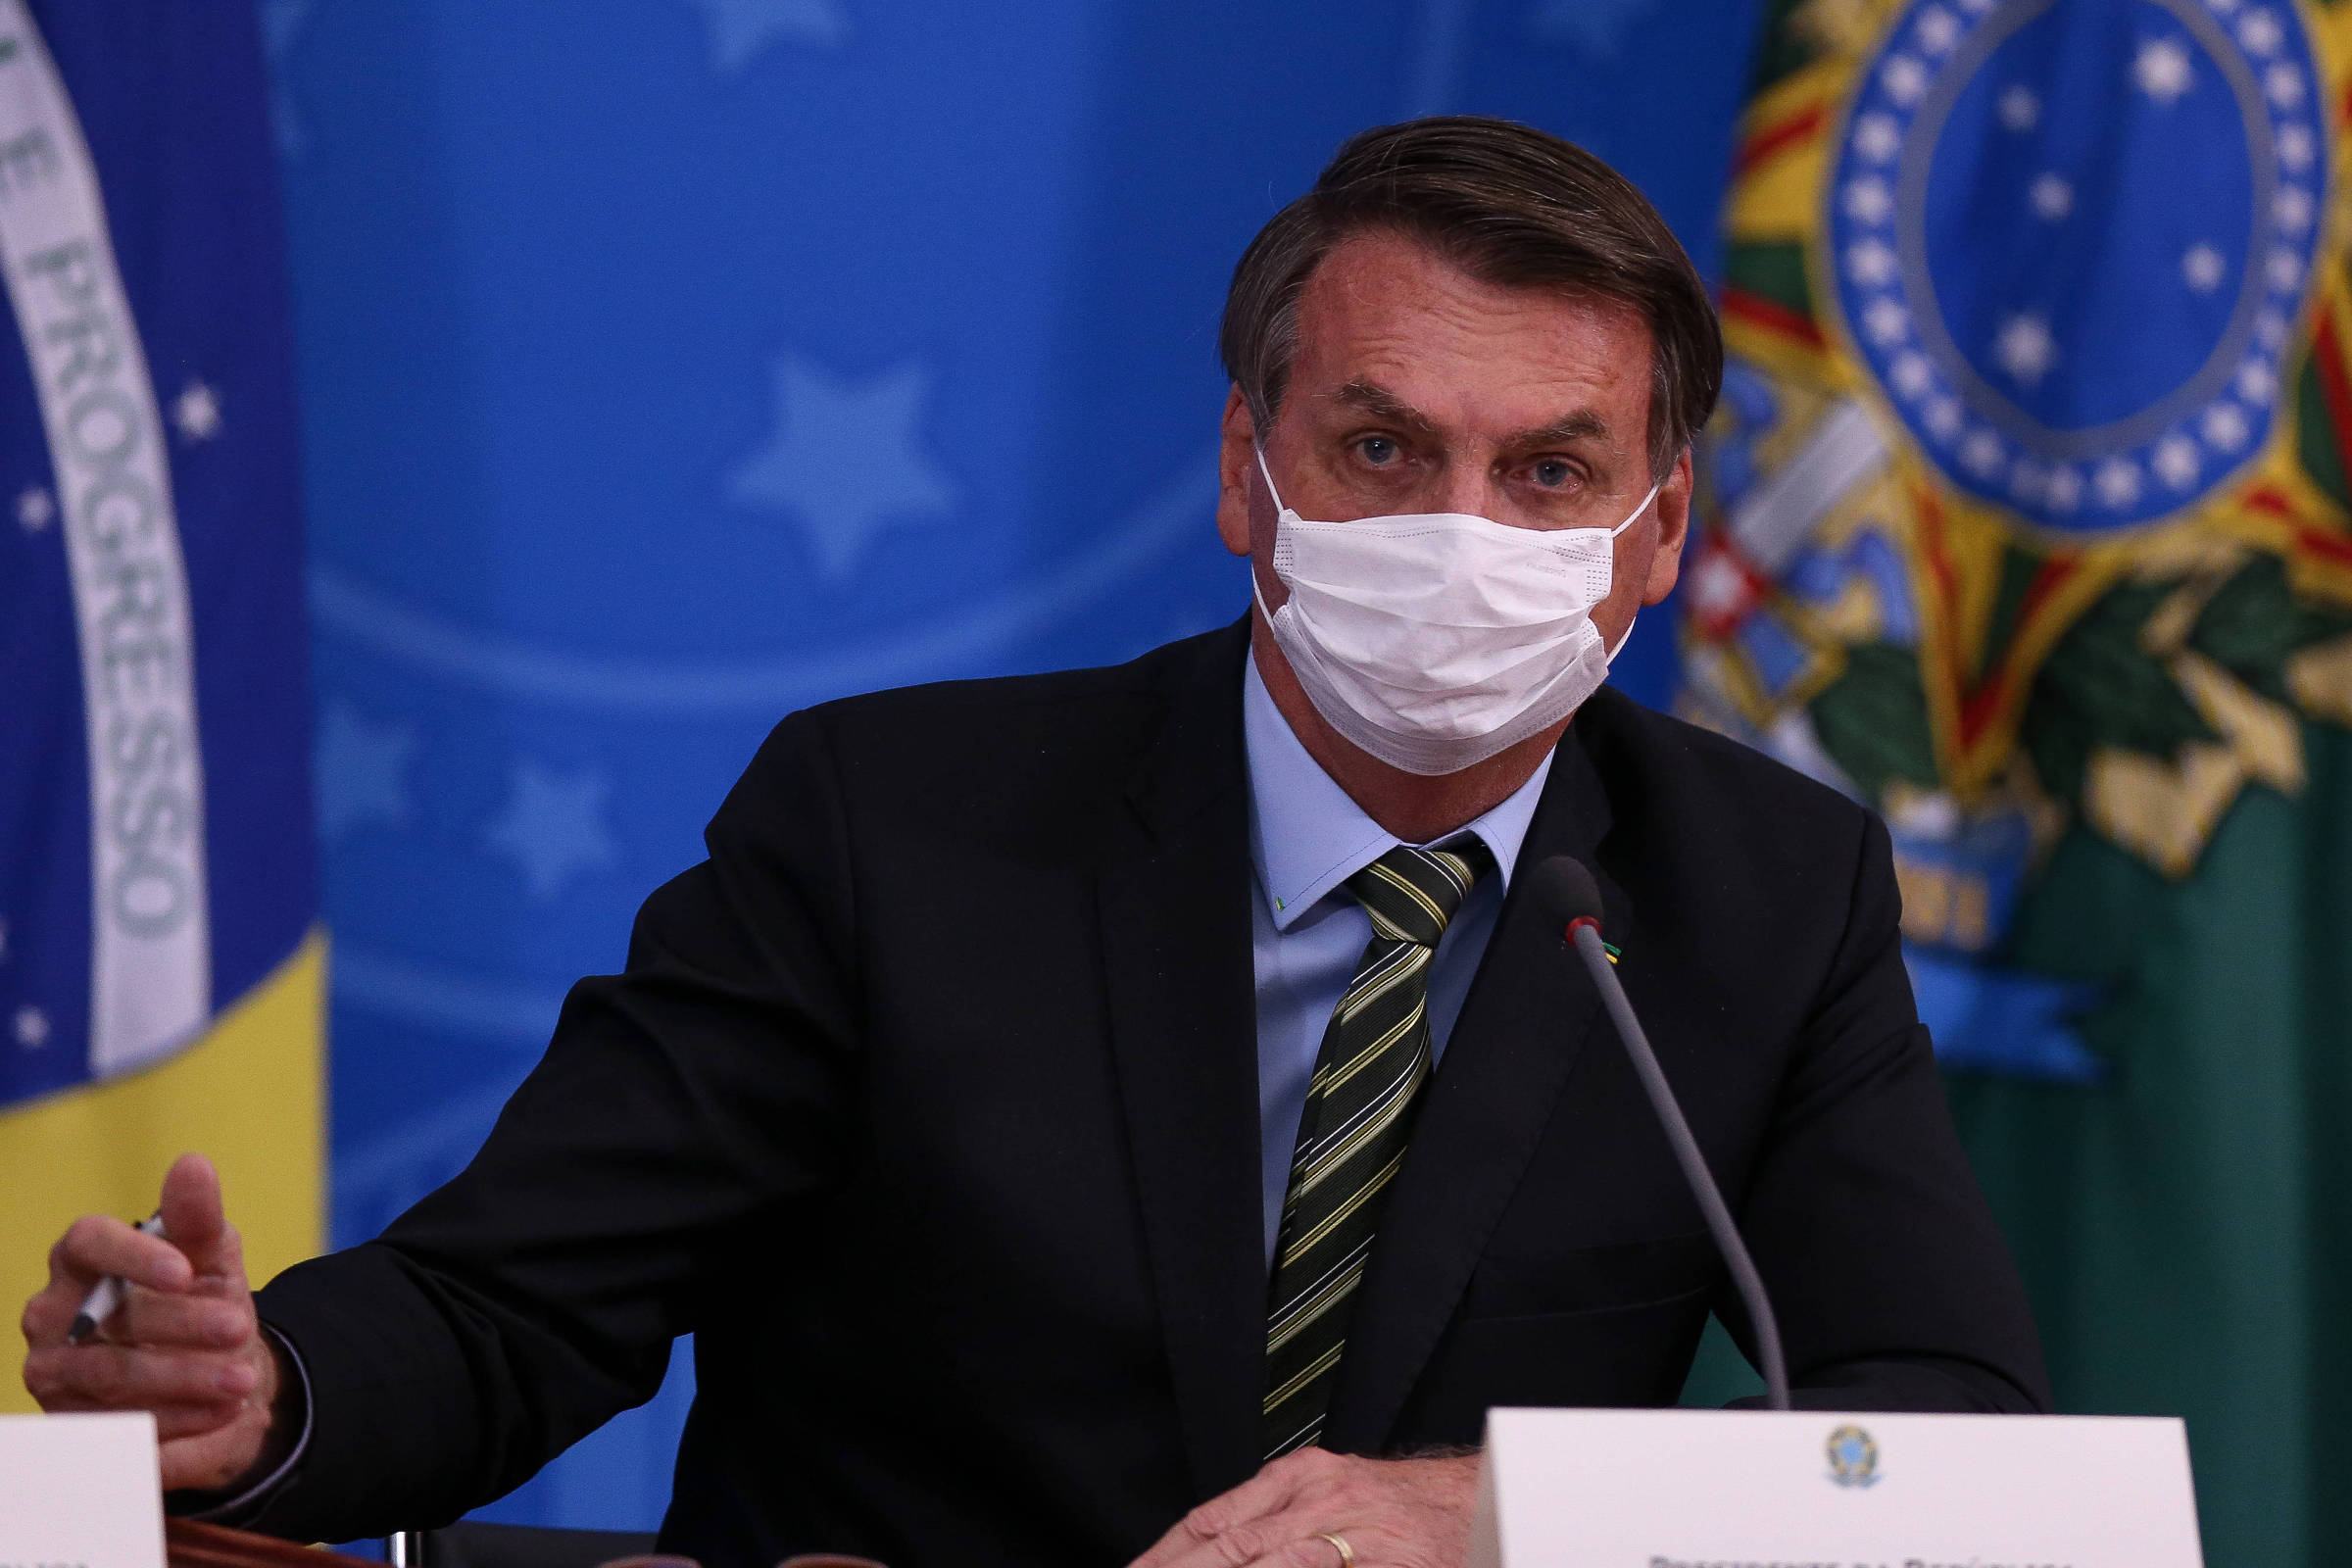 Em pronunciamento, Bolsonaro critica fechamento de escolas, ataca governadores e culpa mídia